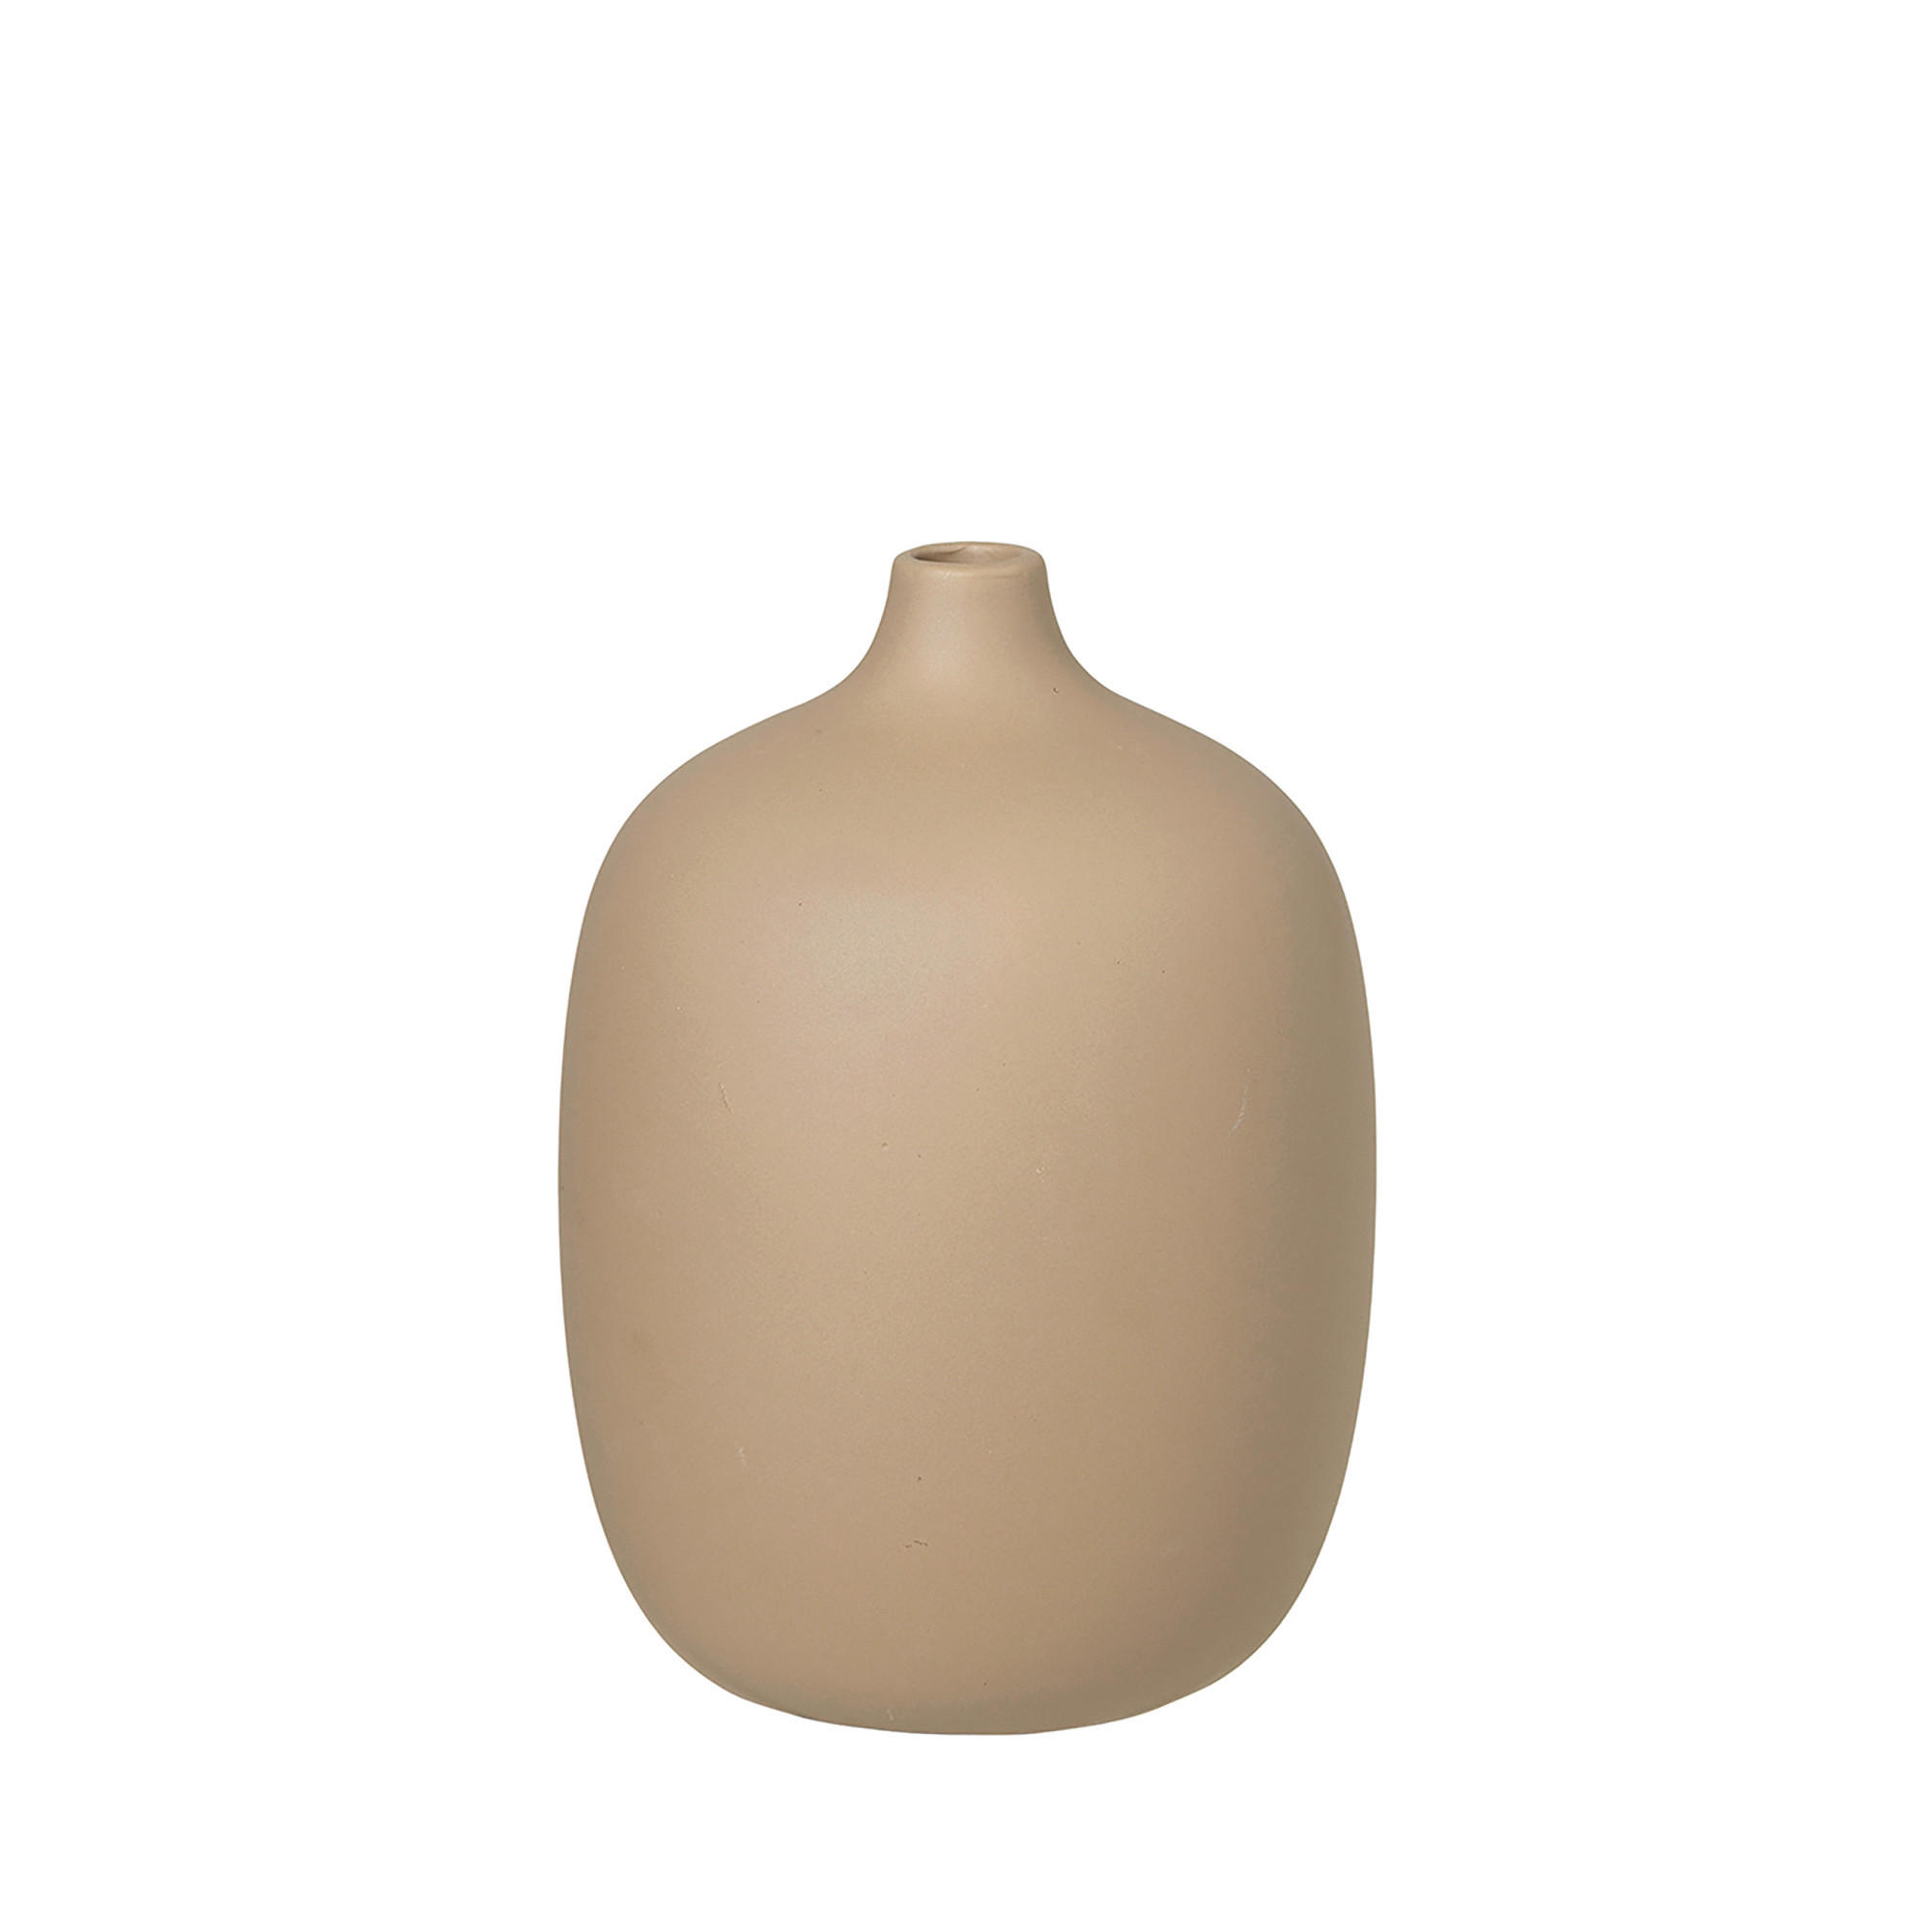 VASE CEOLA 18,5 cm  - Cappuccino, Design, Keramik (13,5/18,5cm) - Blomus